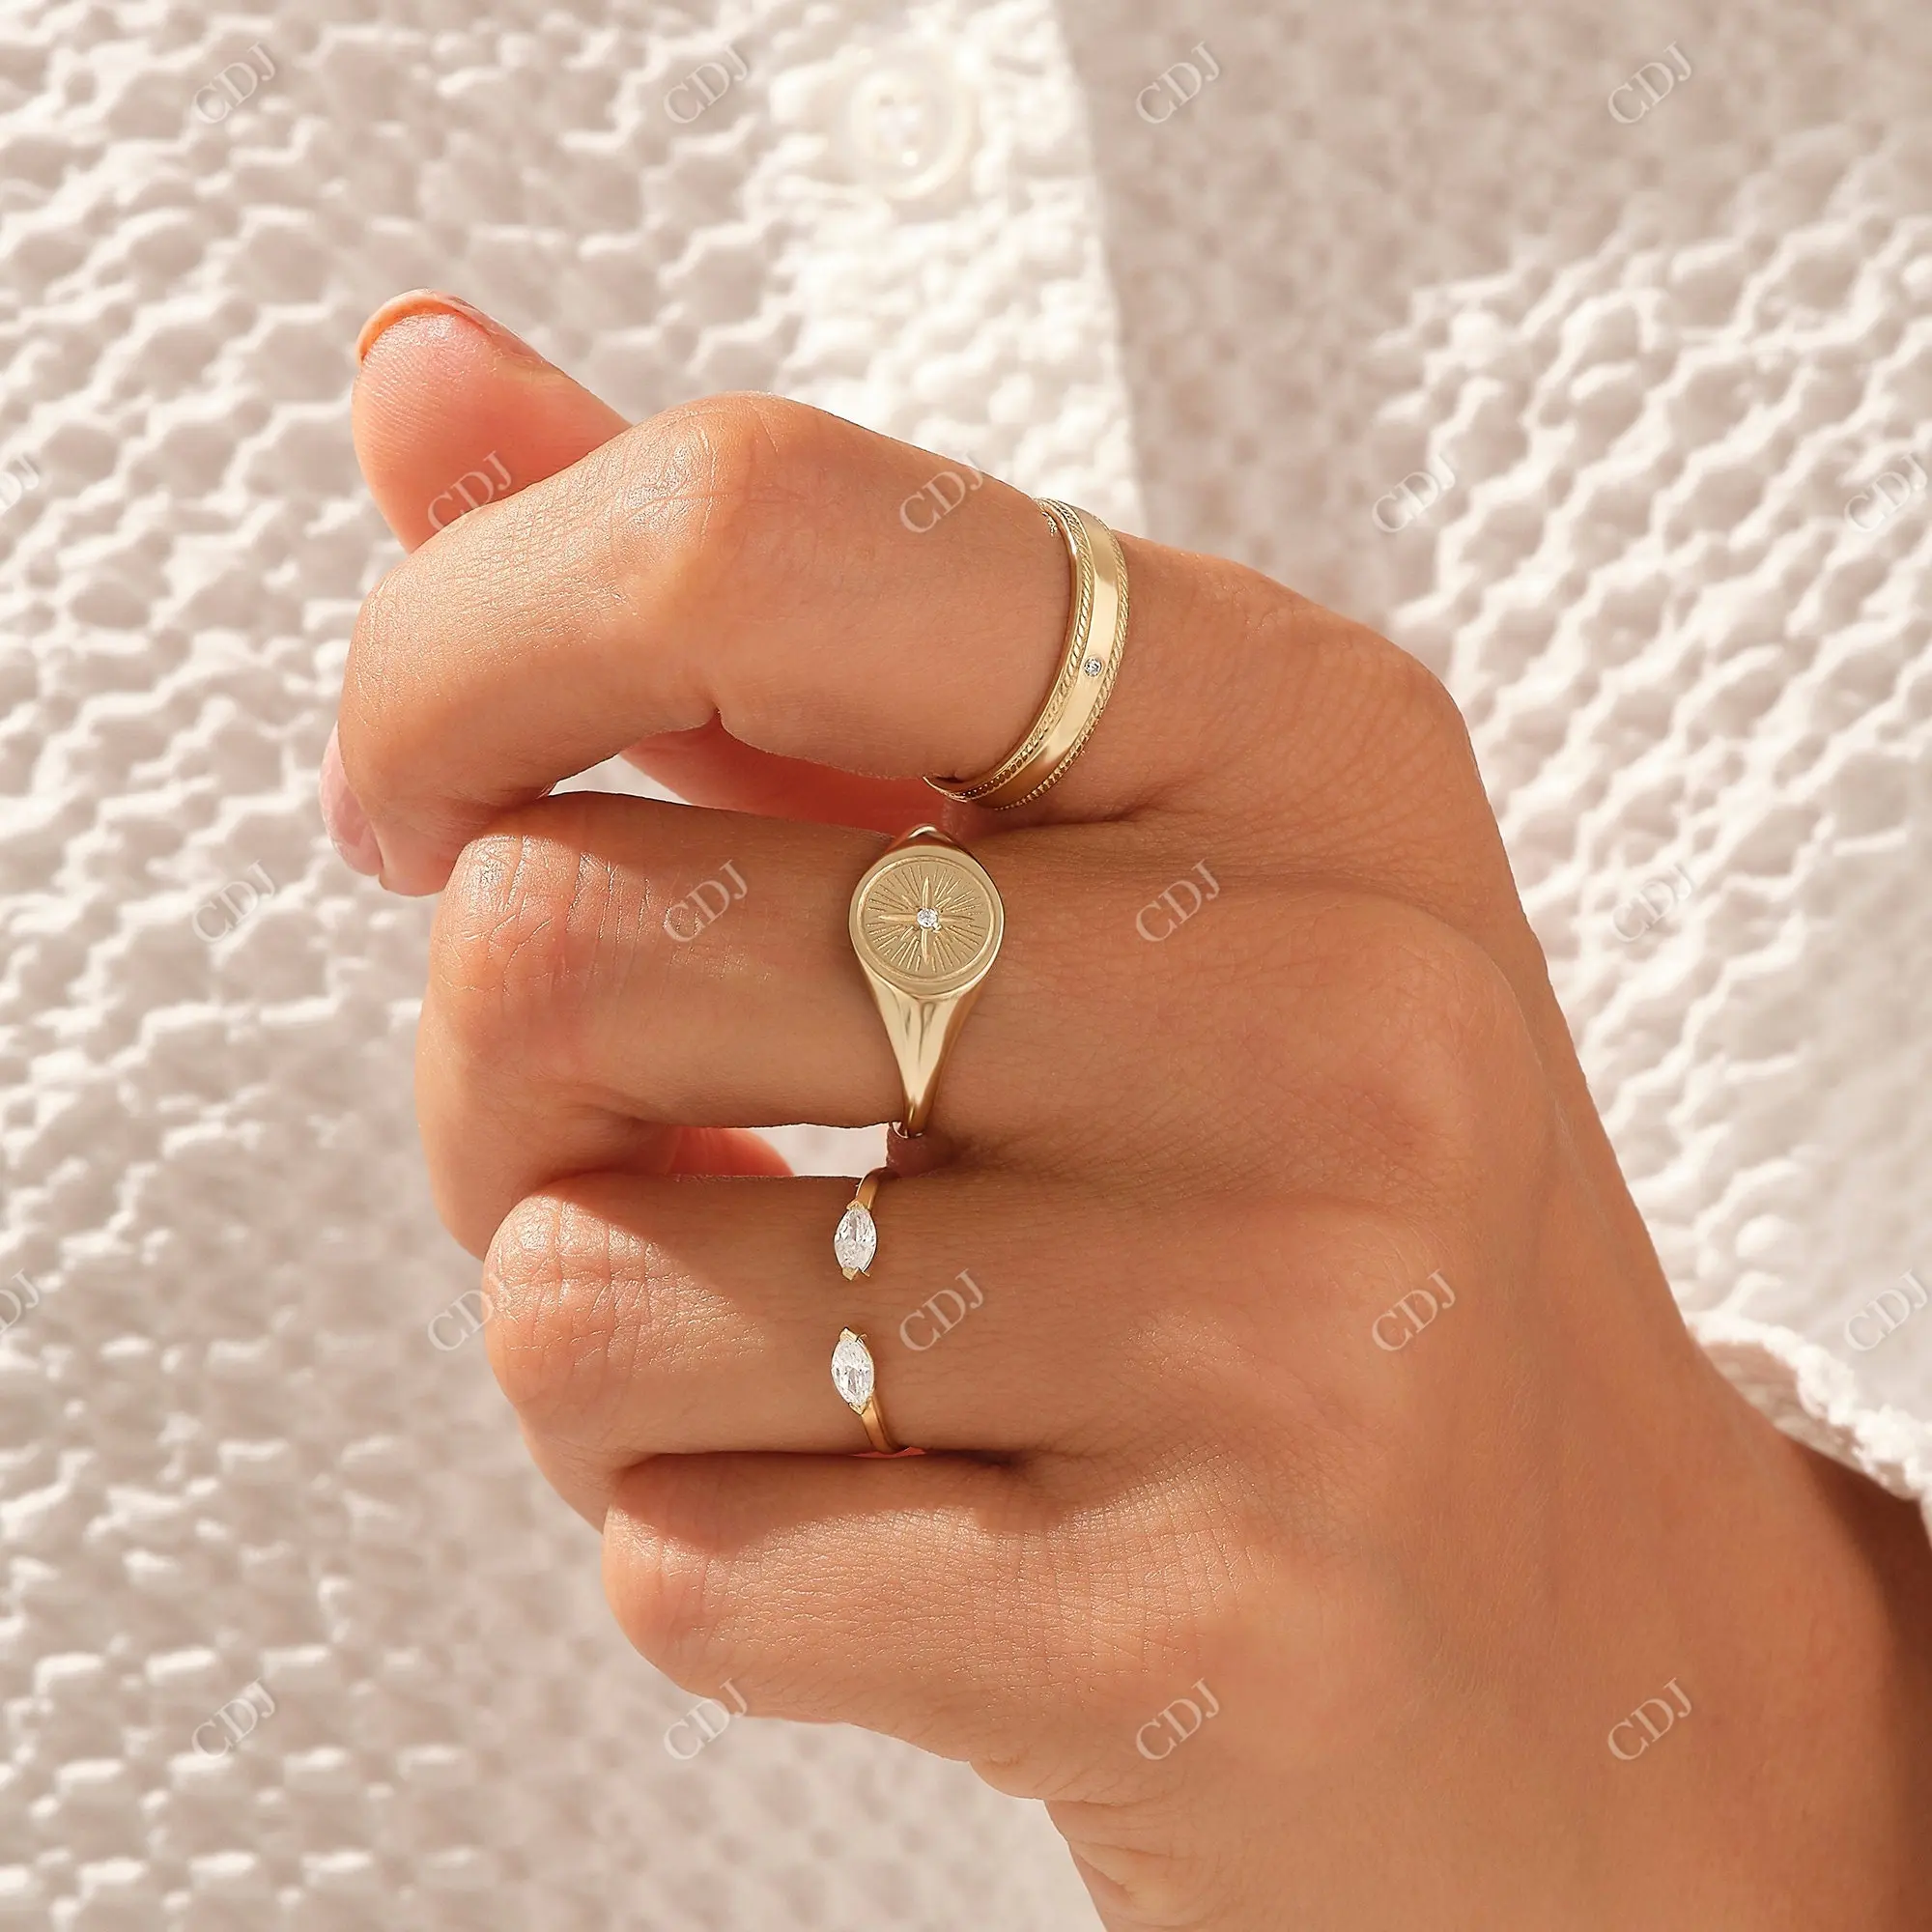 Yeni tasarım 10K altın doğal elmas üreticisi markiz elmas nişan açık kadınlar için manşet yüzük çift markiz açık bant